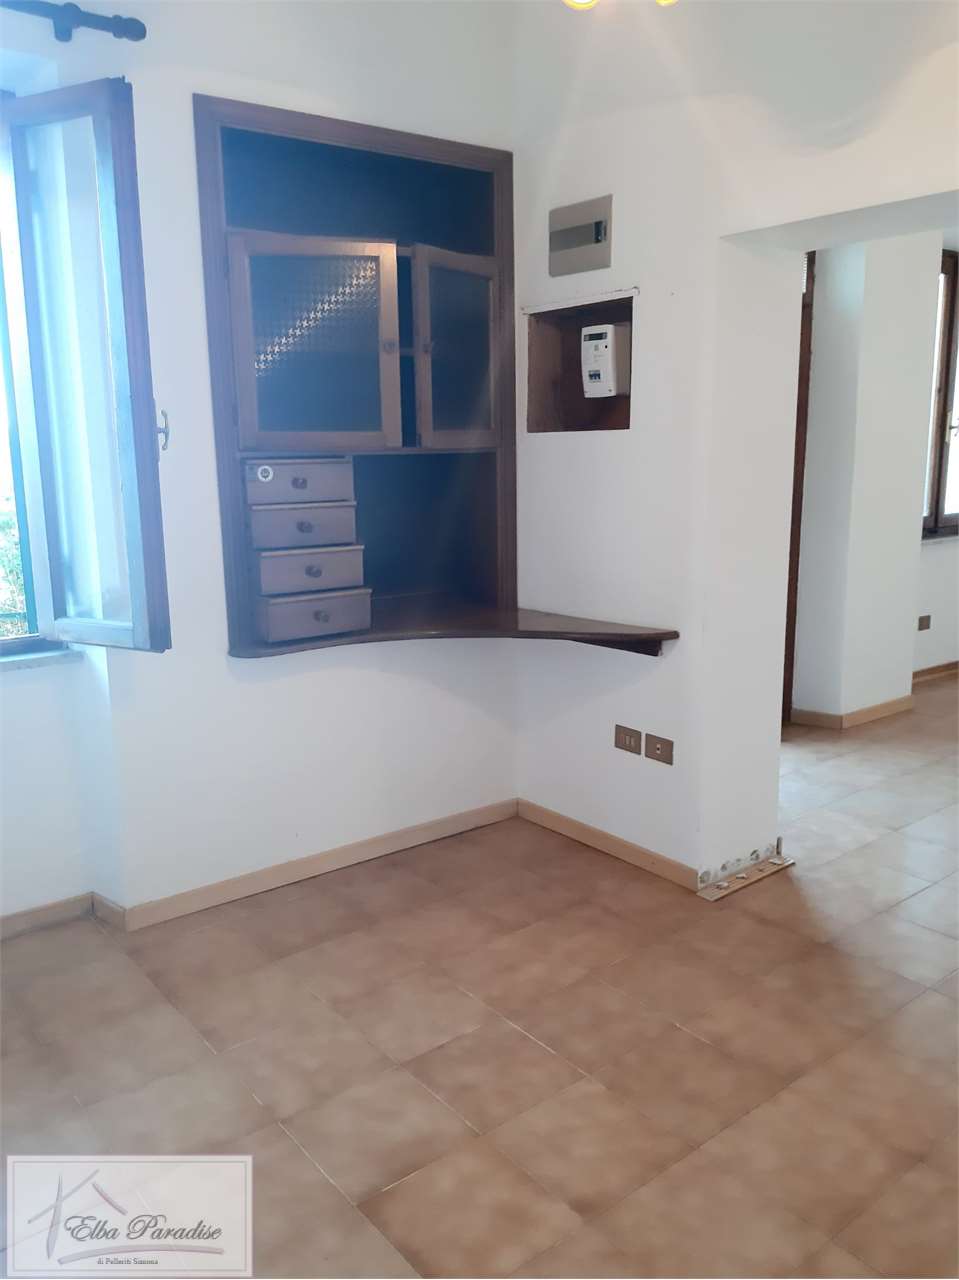 Appartamento in vendita a Capoliveri, 4 locali, zona Località: Zona centrale, prezzo € 198.000 | PortaleAgenzieImmobiliari.it